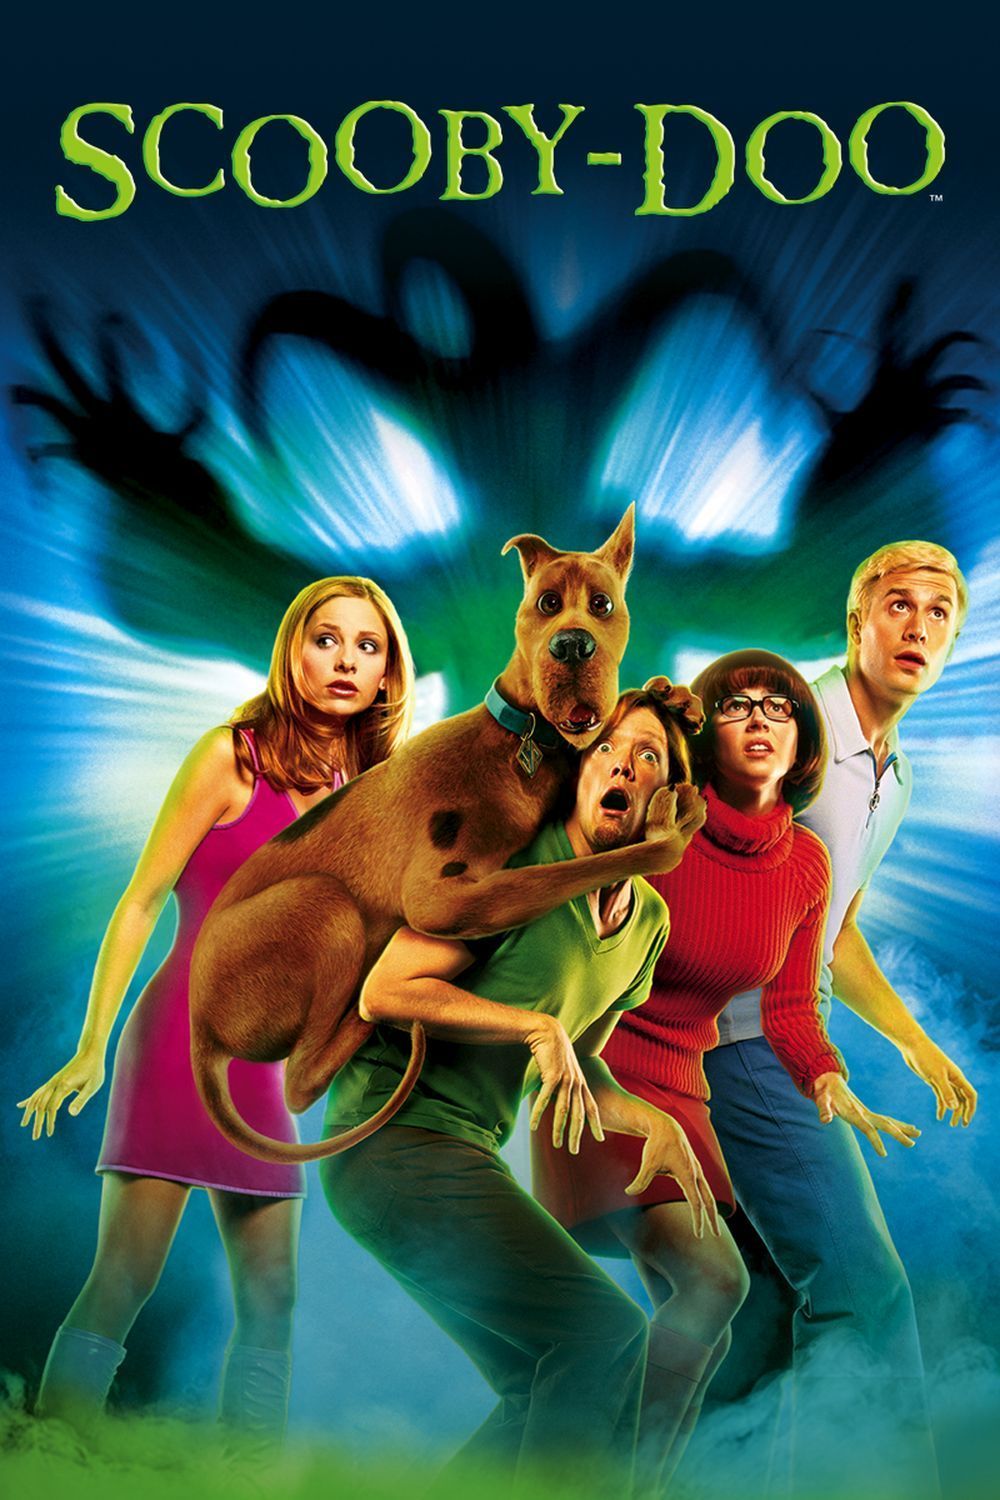 Plakat von "Scooby-Doo"